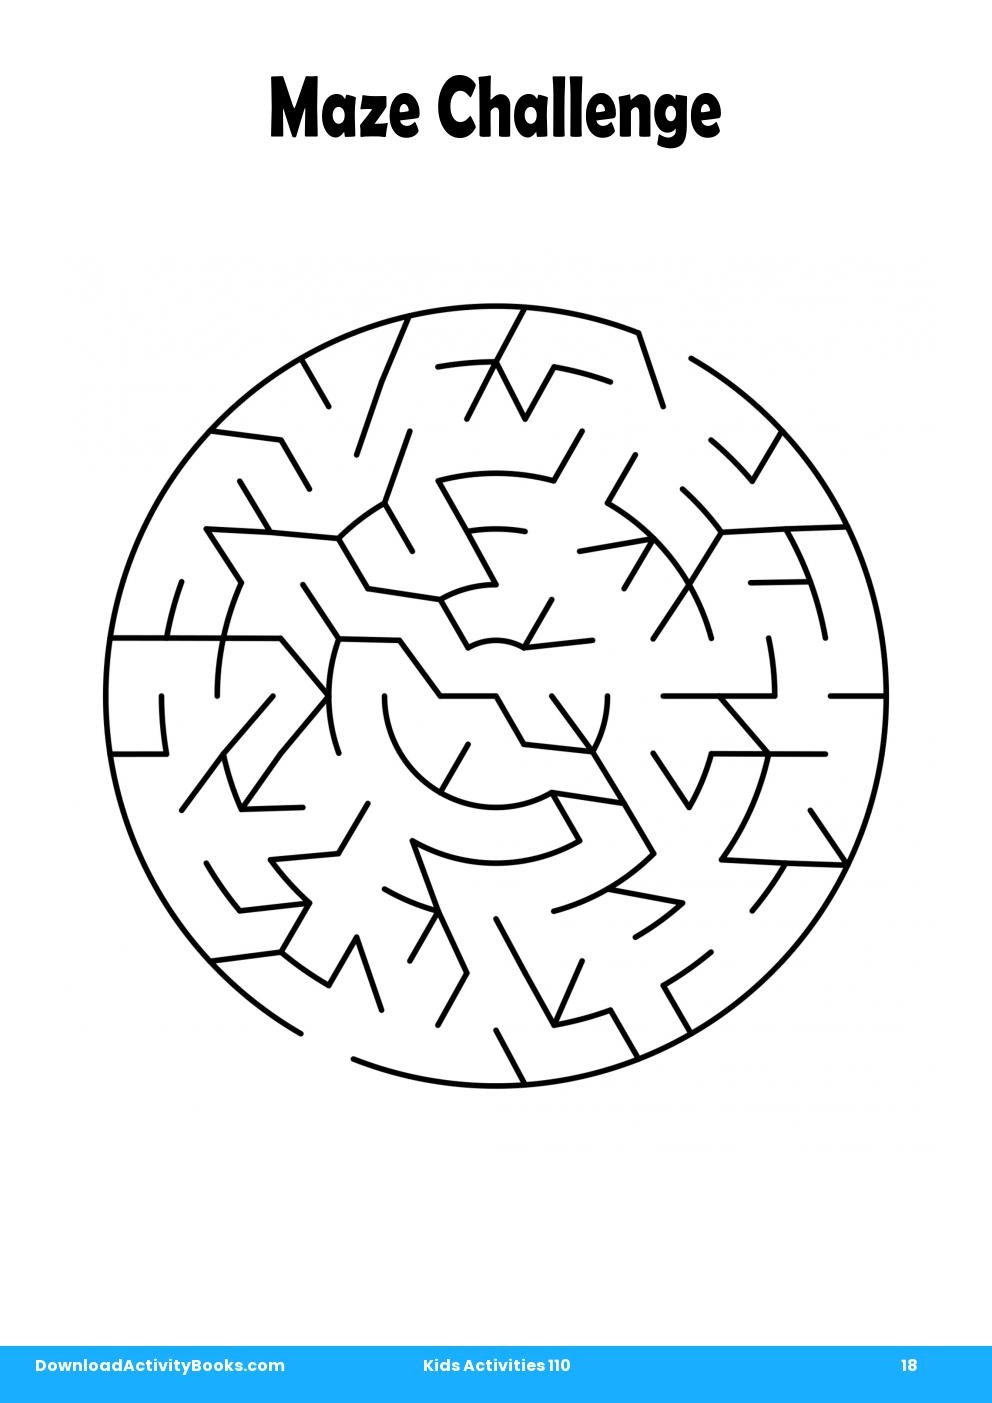 Maze Challenge in Kids Activities 110